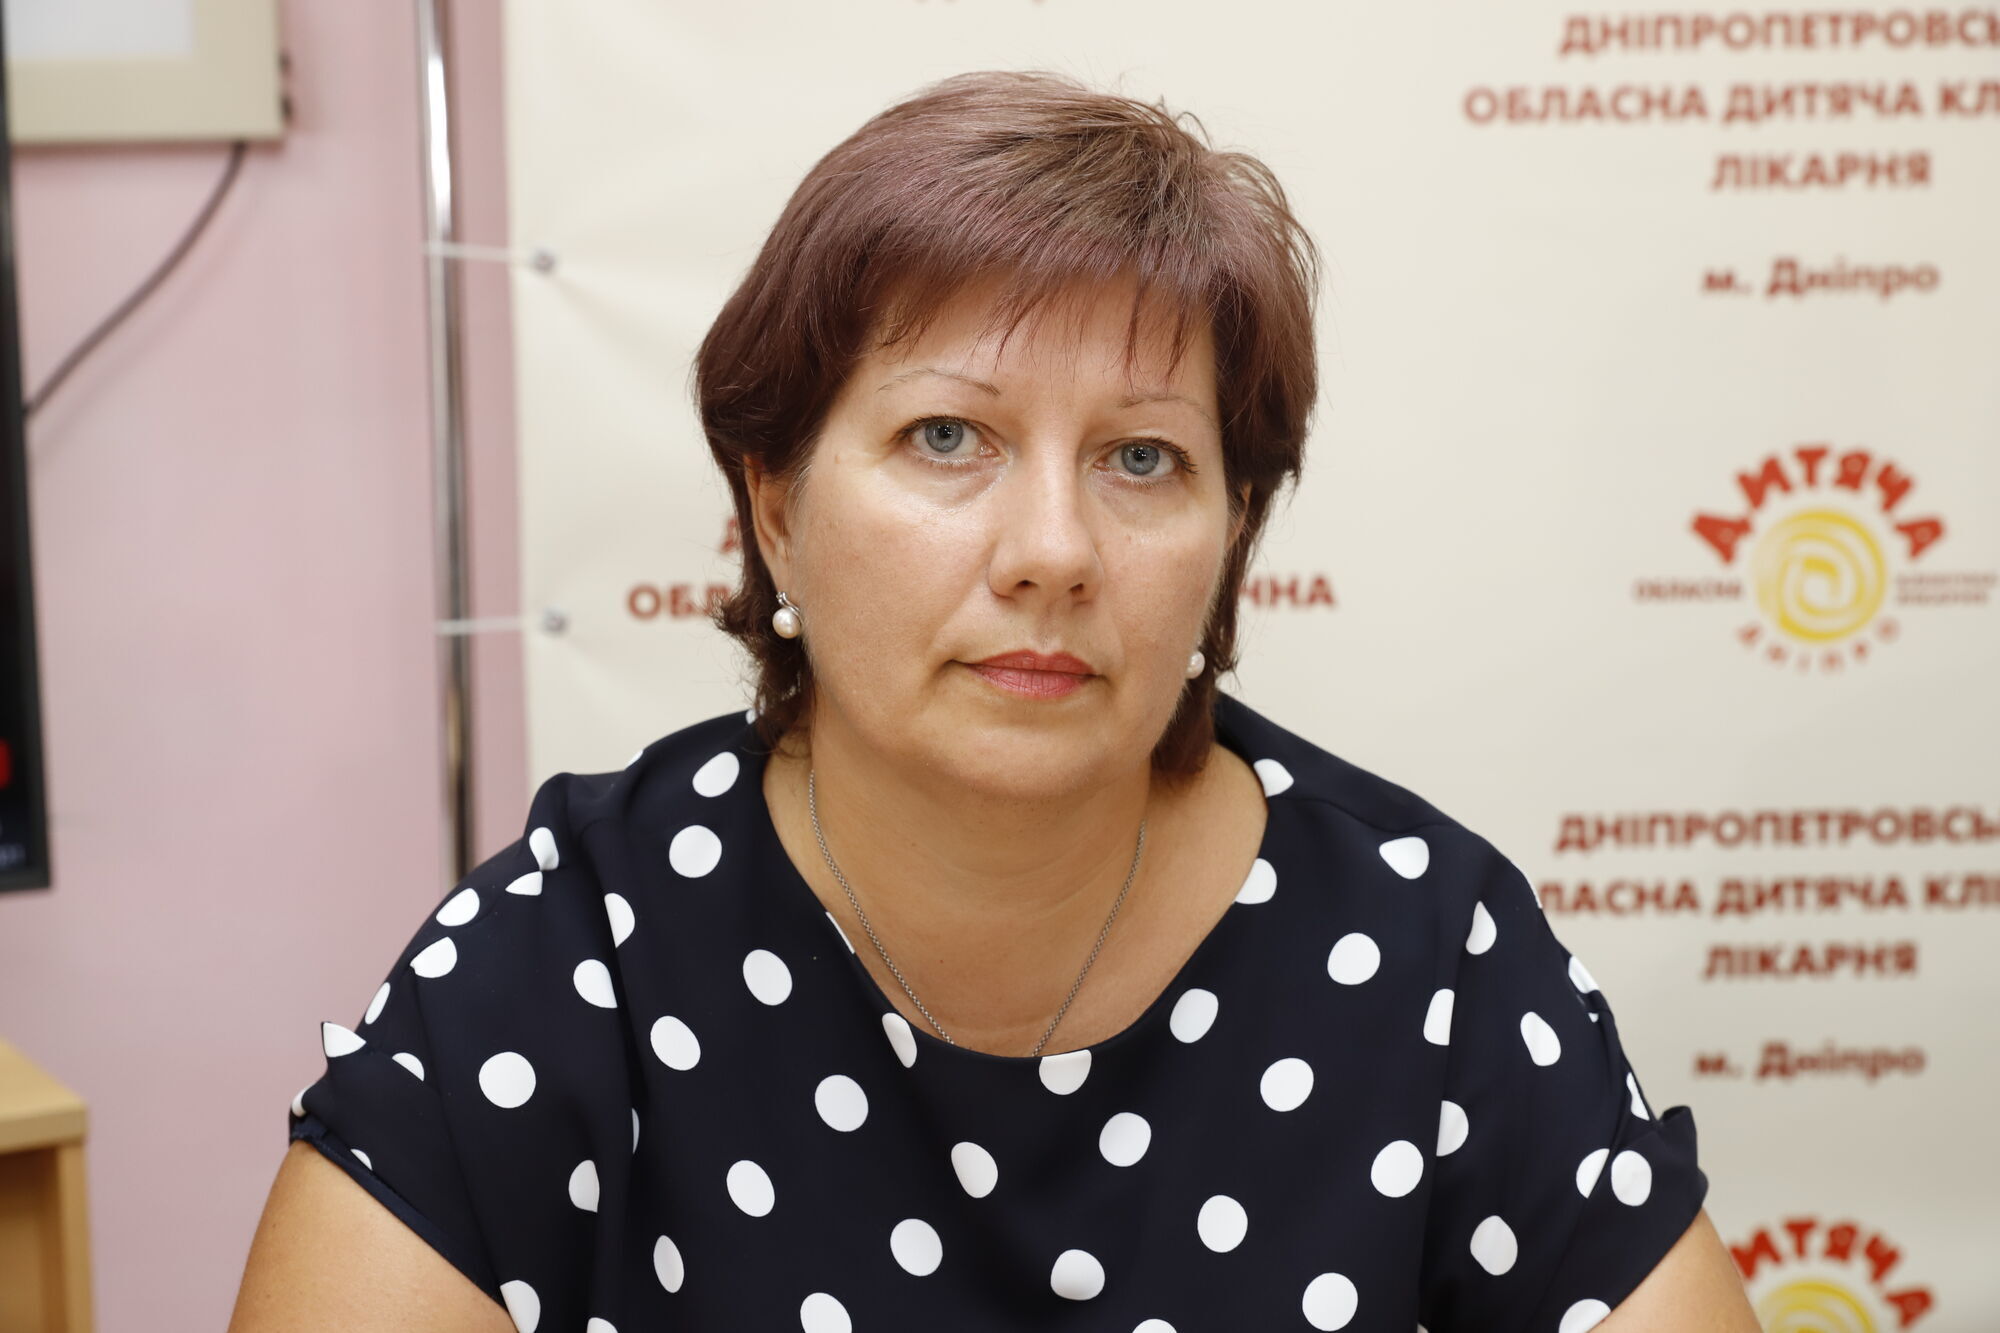 Начальница отдела лечебно-профилактической помощи детям и матерям департамента здравоохранения облгосадминистрации Наталья Шмалько